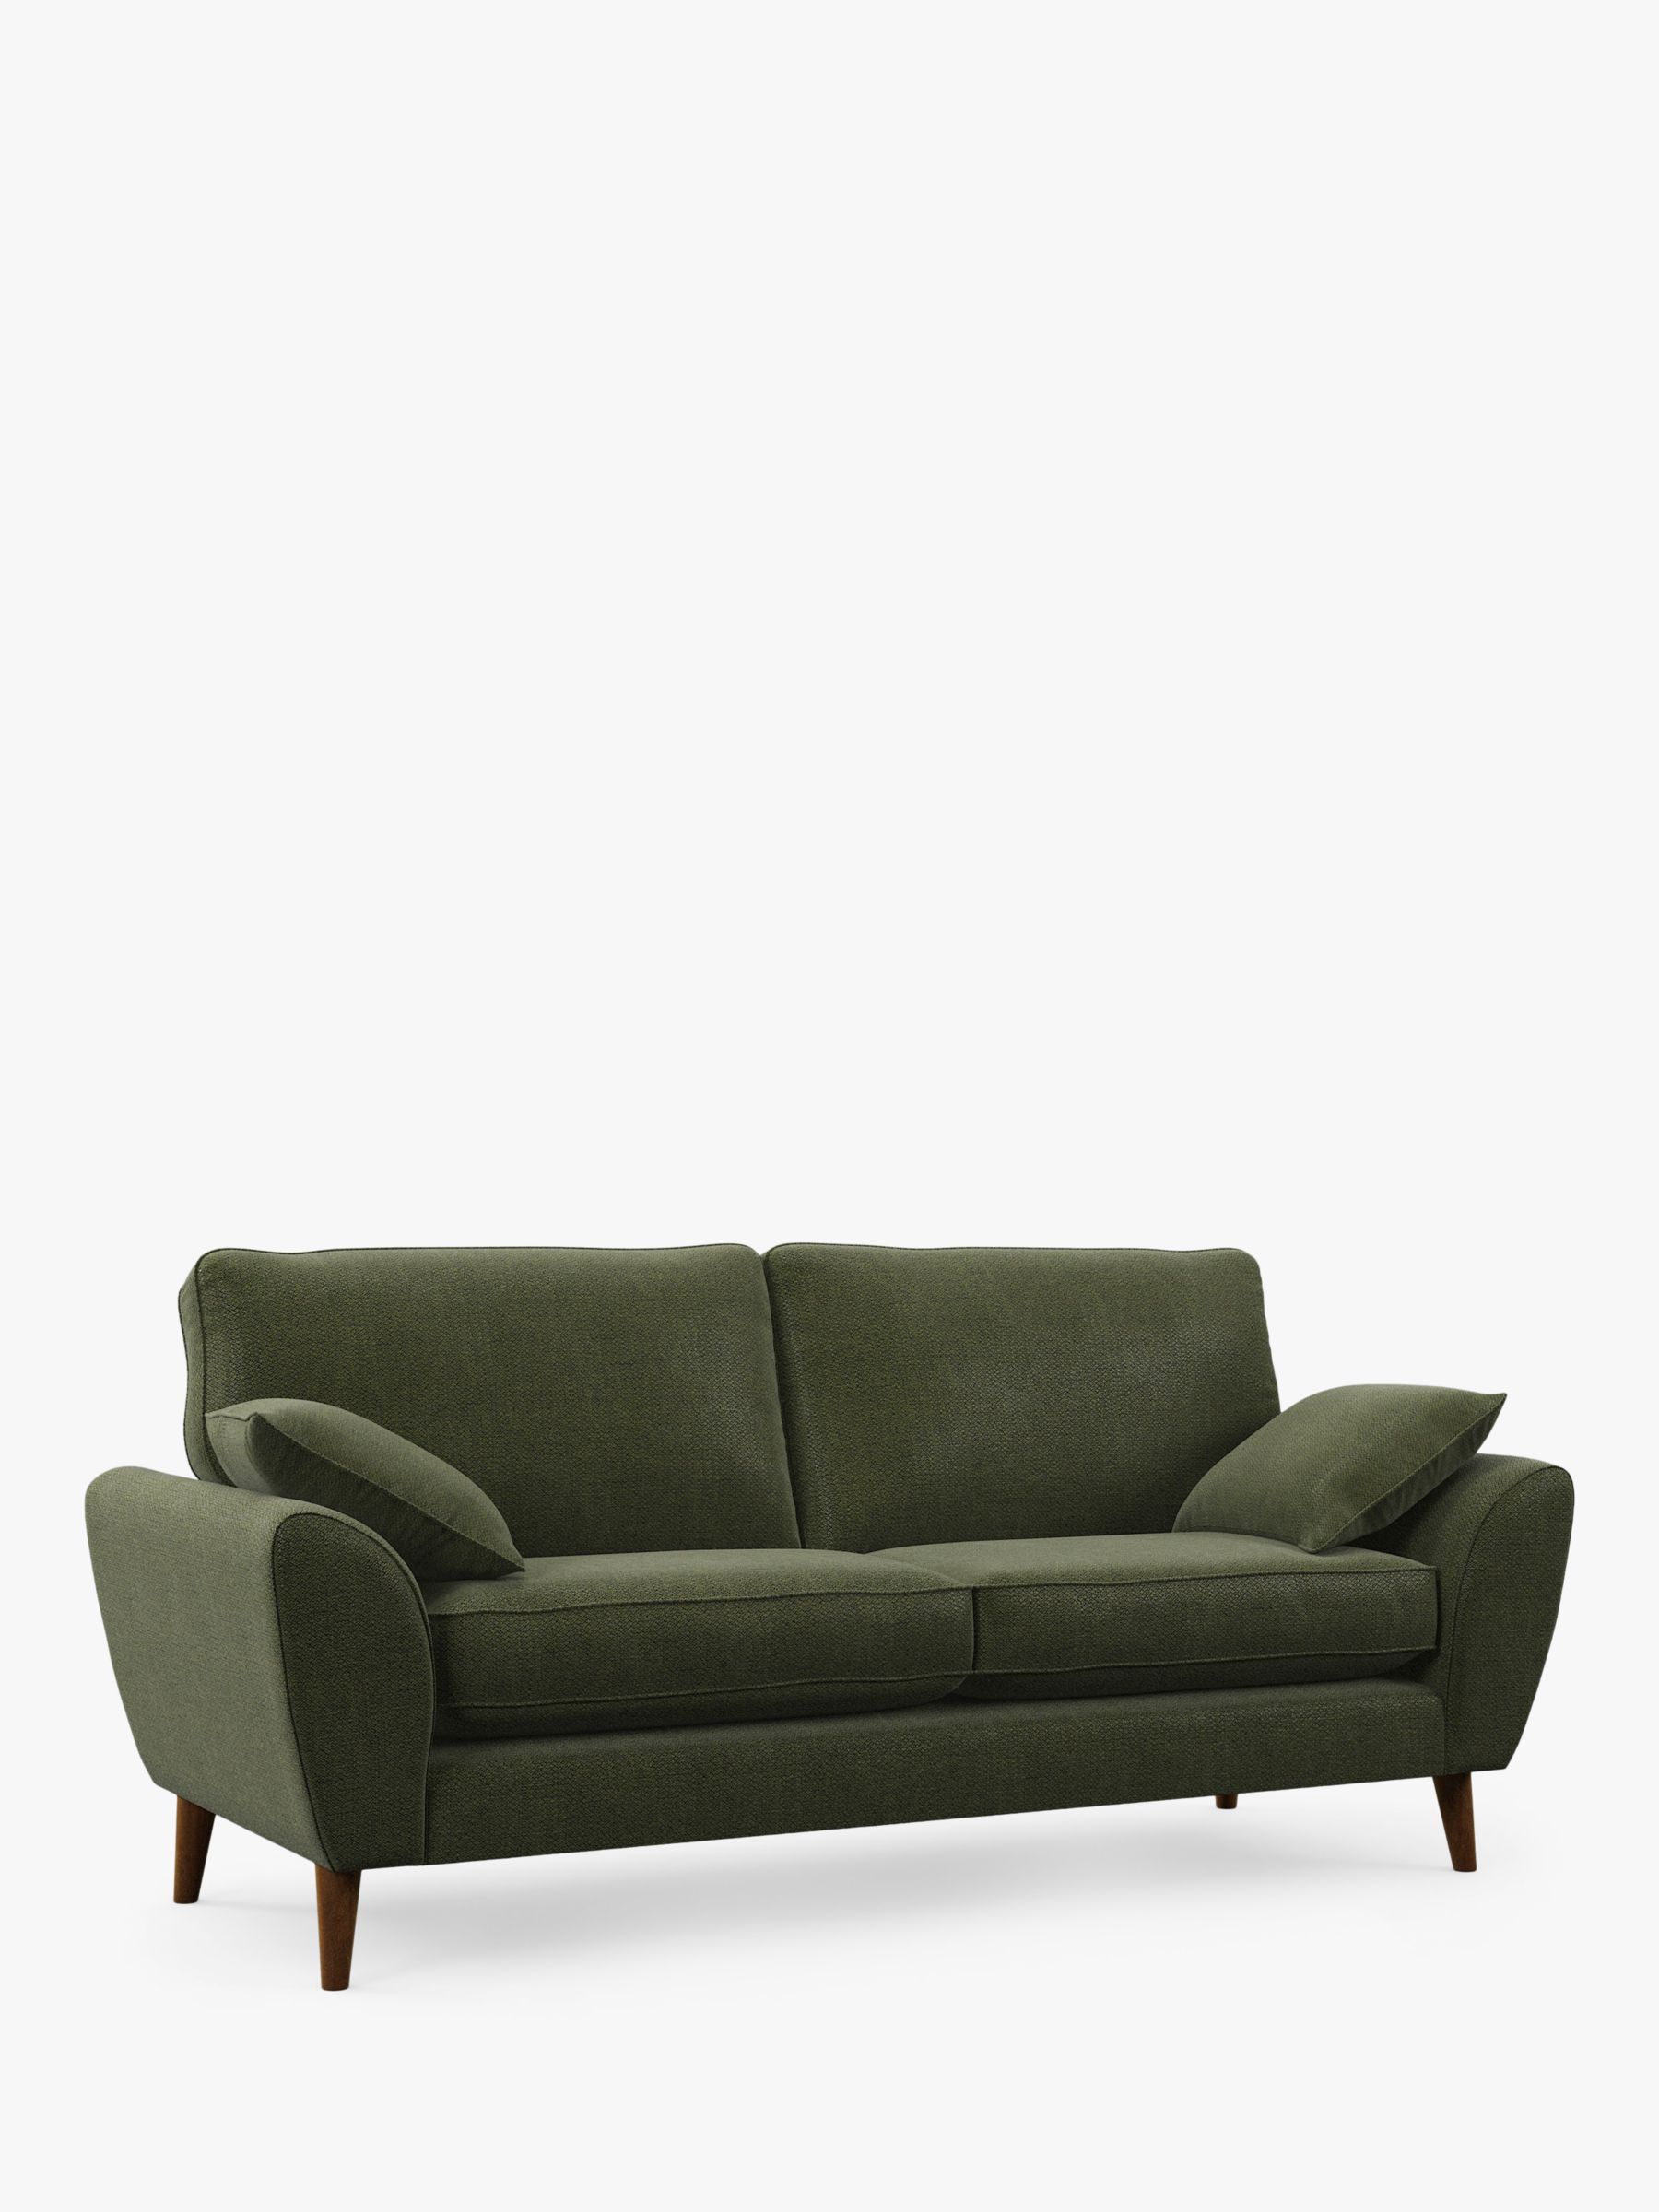 AMBLESIDE Range, John Lewis Ambleside Large 3 Seater Sofa, Dark Leg, Textured Weave Green